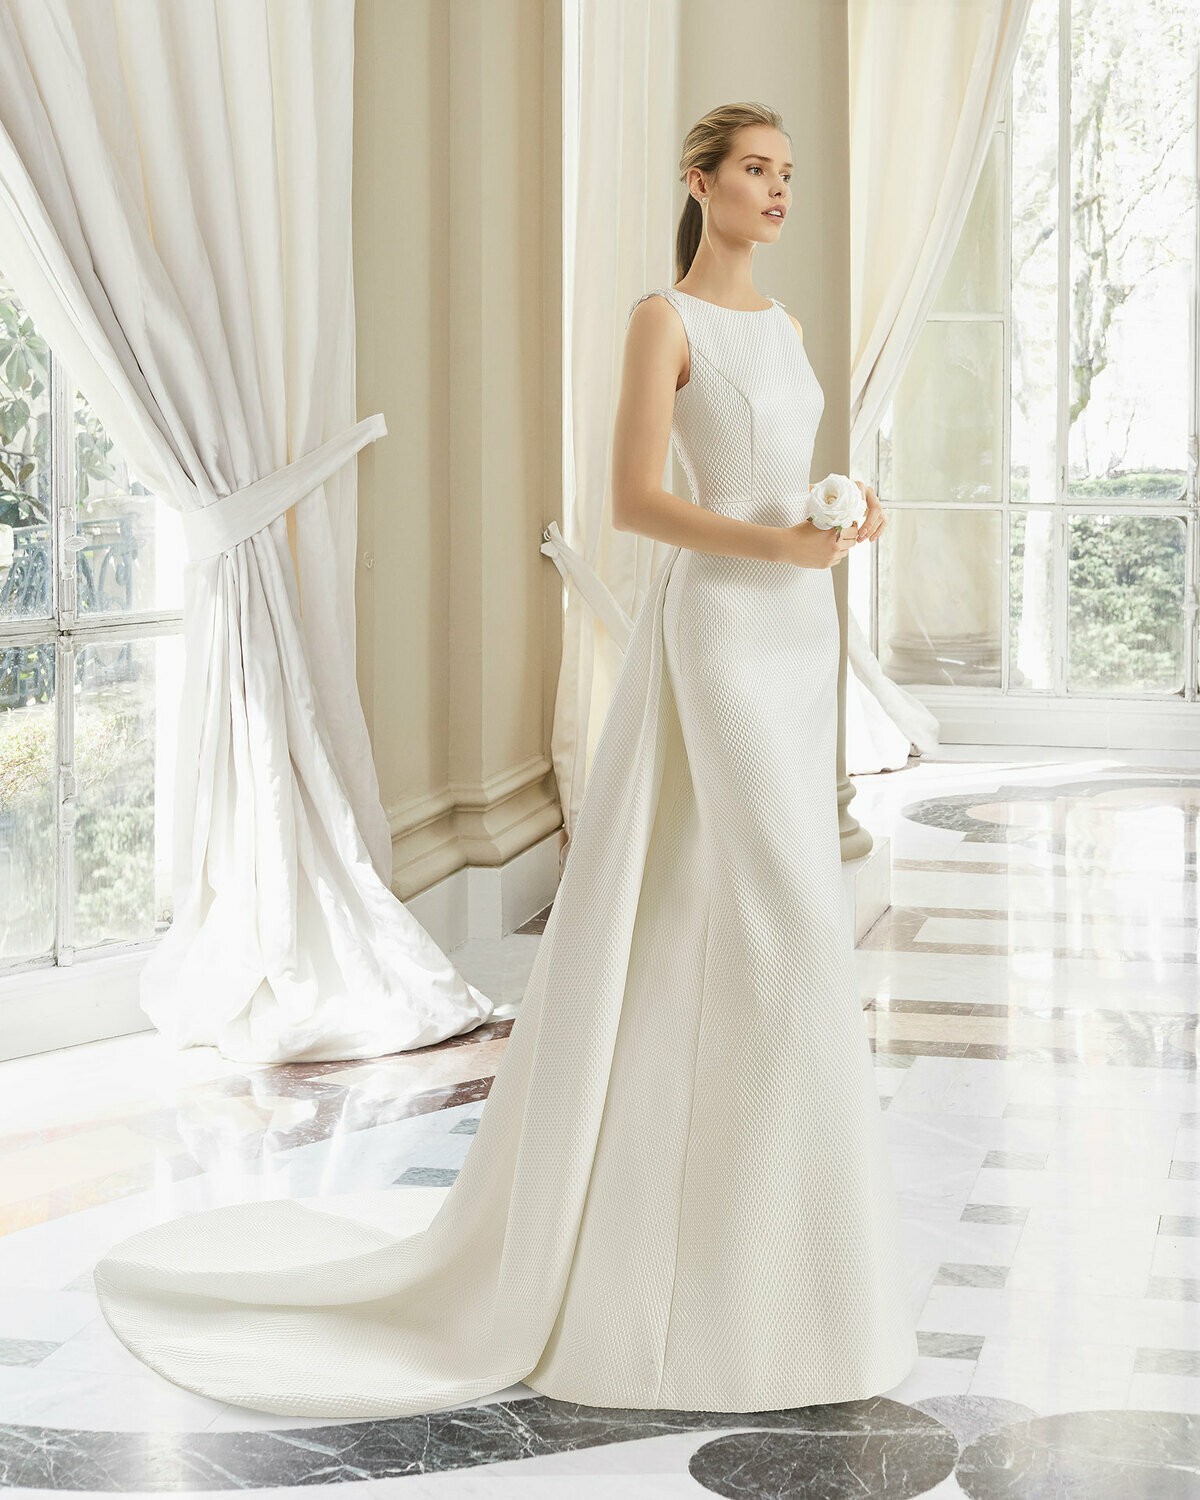 NAVAS - abito da sposa collezione 2020 - Rosa Clarà Couture